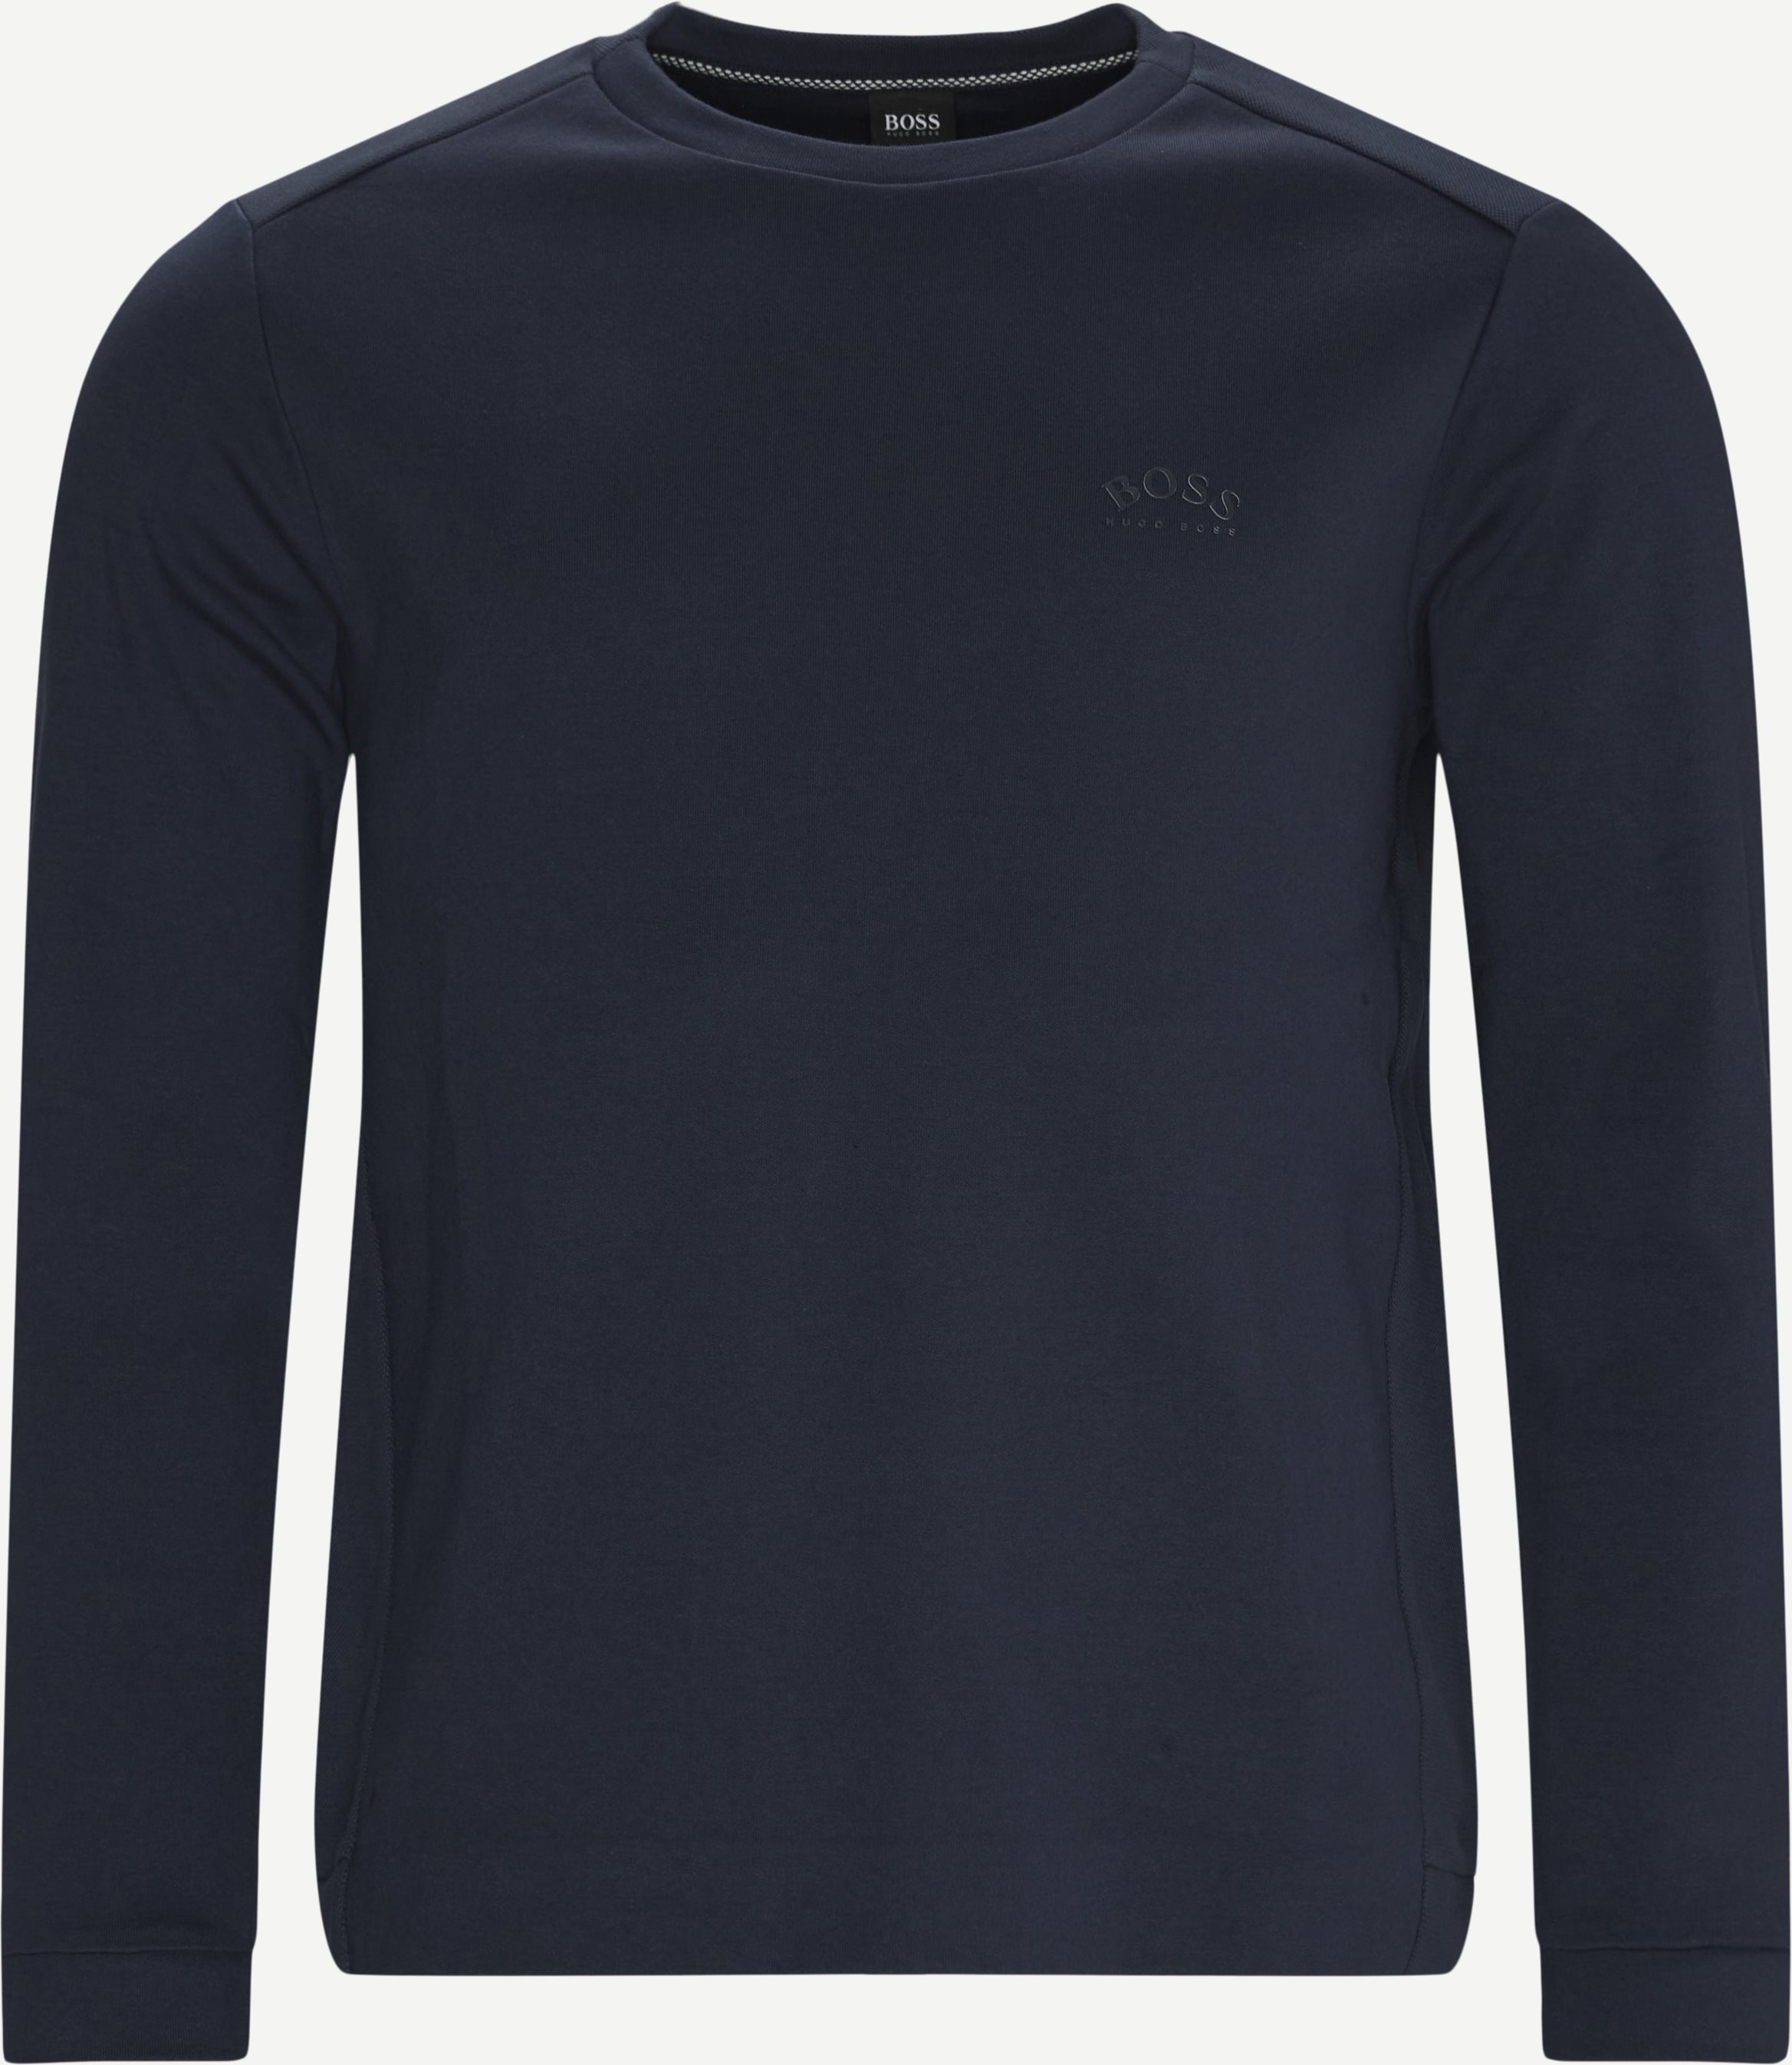 Salbo Sweatshirt mit Rundhalsausschnitt - Sweatshirts - Regular fit - Blau